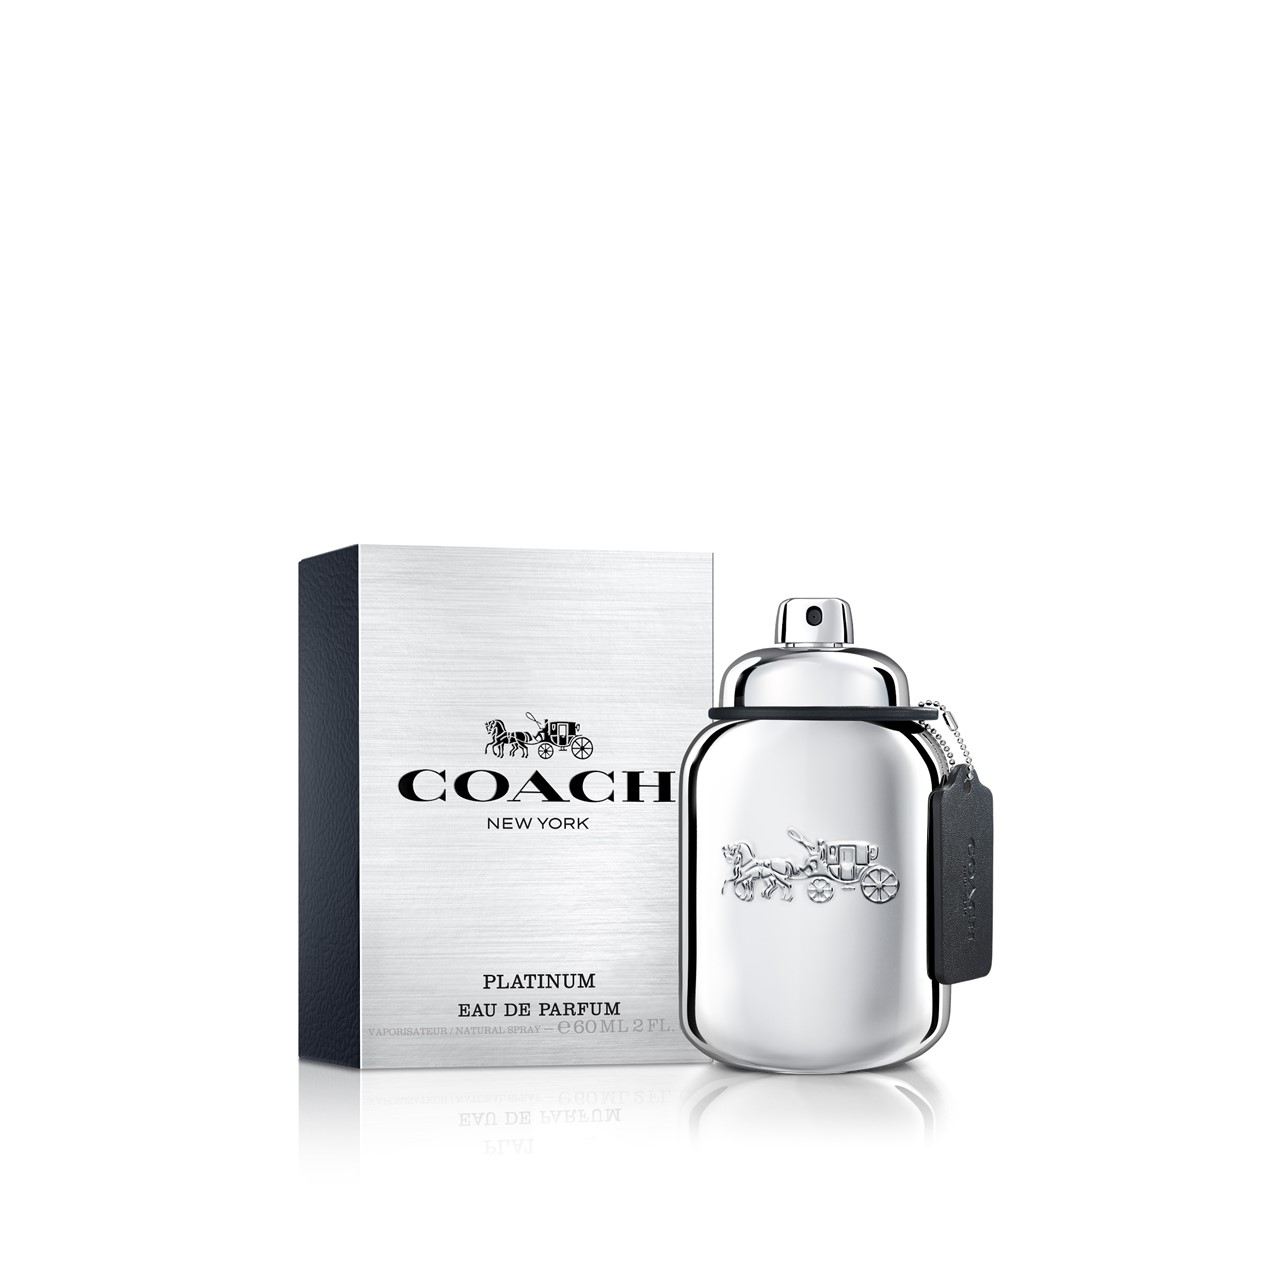 Coach Platinum Eau de Parfum For Men 60ml (2.0fl oz)